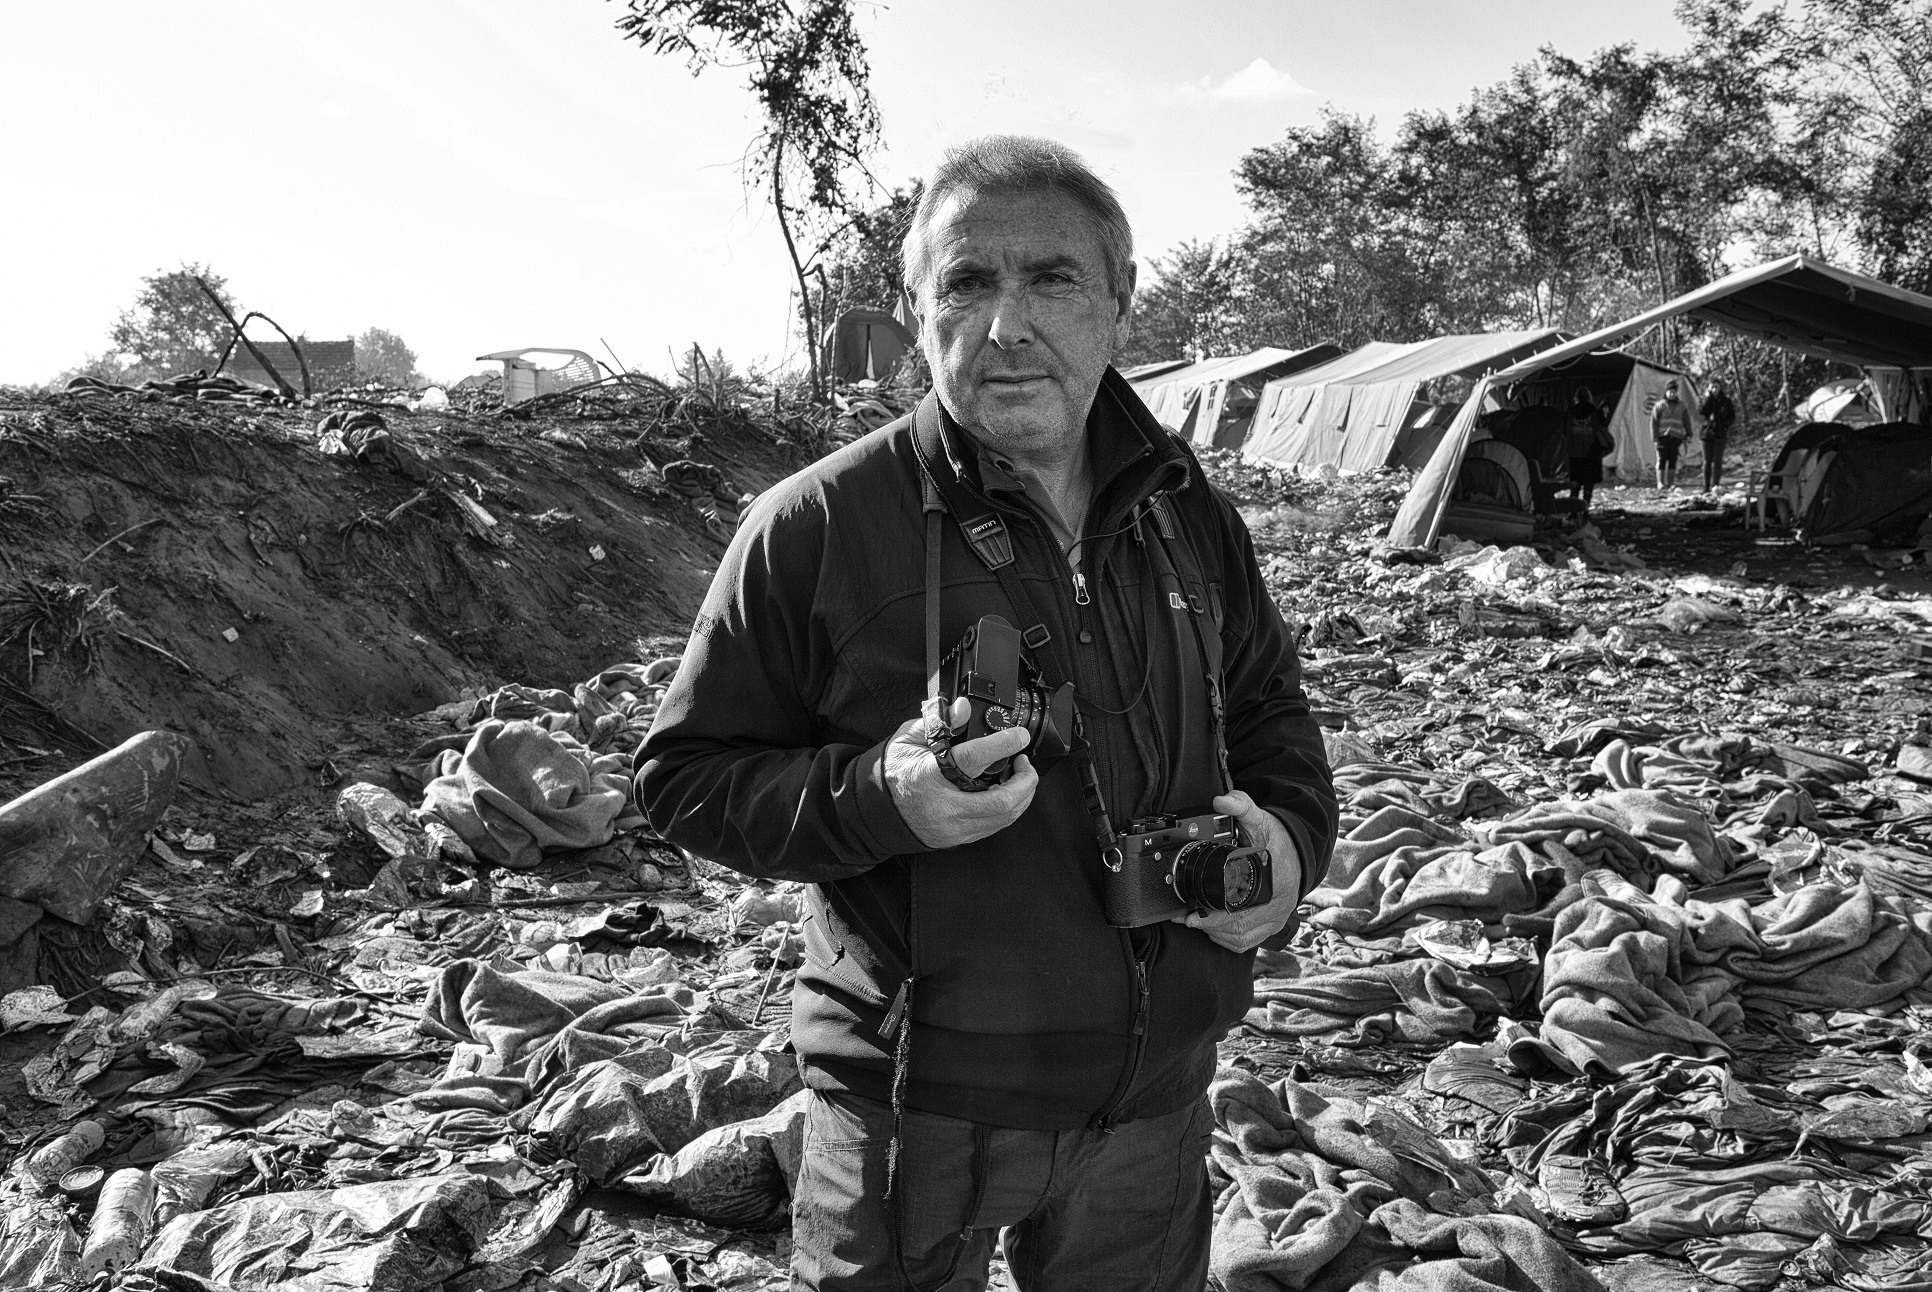 Οκτώβριος 2015, Σερβία: Ο ίδιος ο Τομ Στόνταρτ σε αποστολή για το Annenberg Space for Photography, του Λος Αντζελες